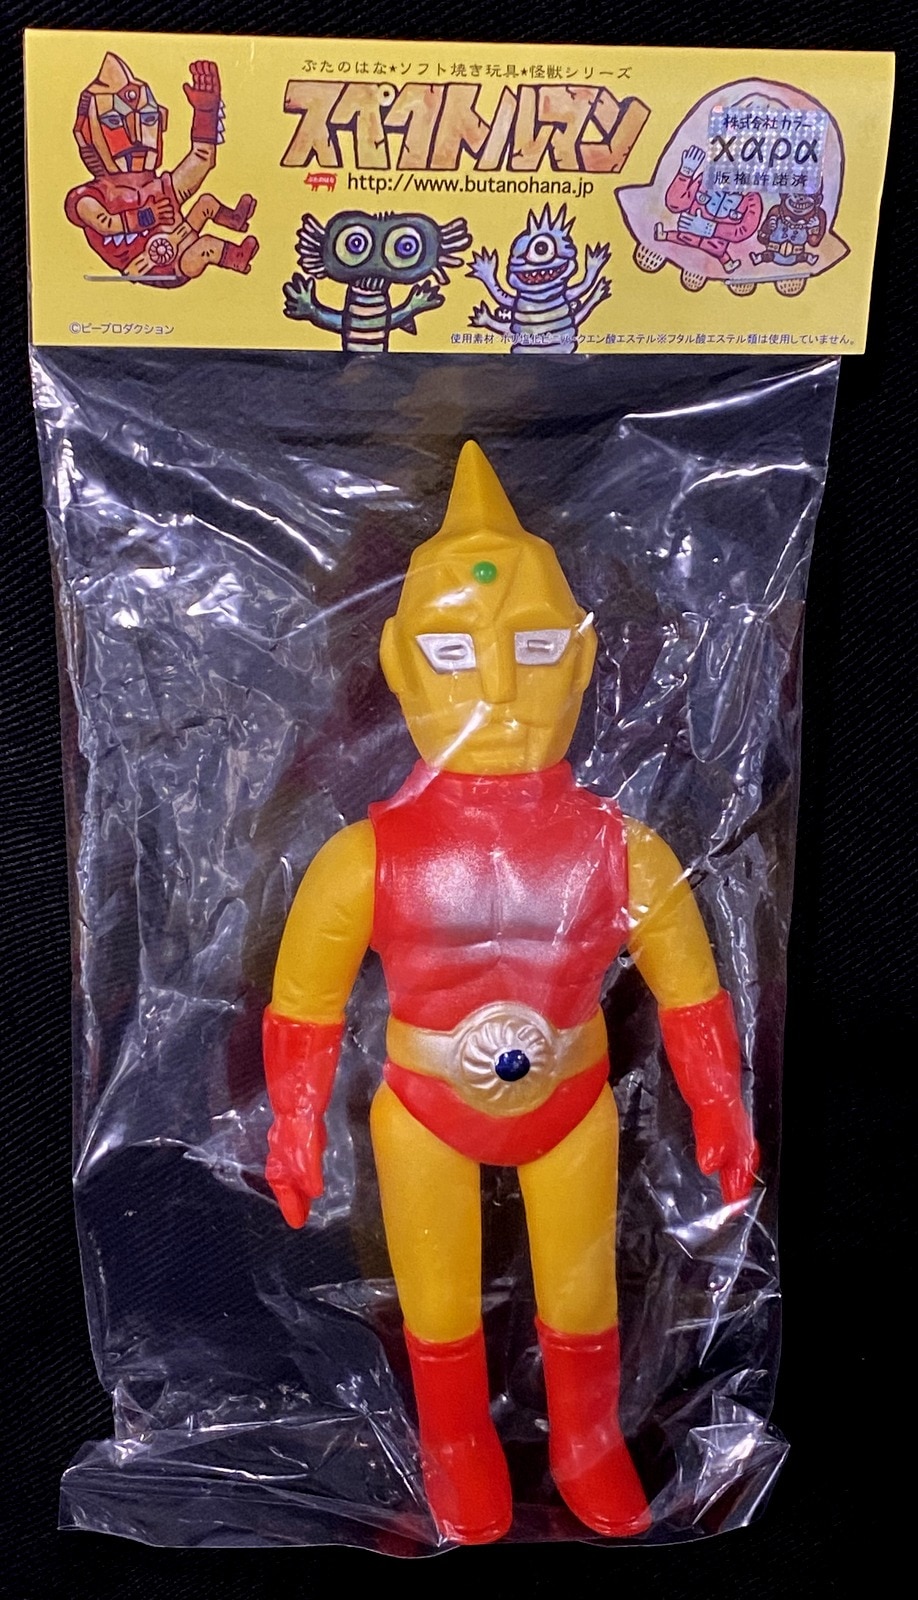 ぶたのはな ソフト焼き玩具 怪獣シリーズ スペクトルマン(黄色成型/胴赤) | まんだらけ Mandarake